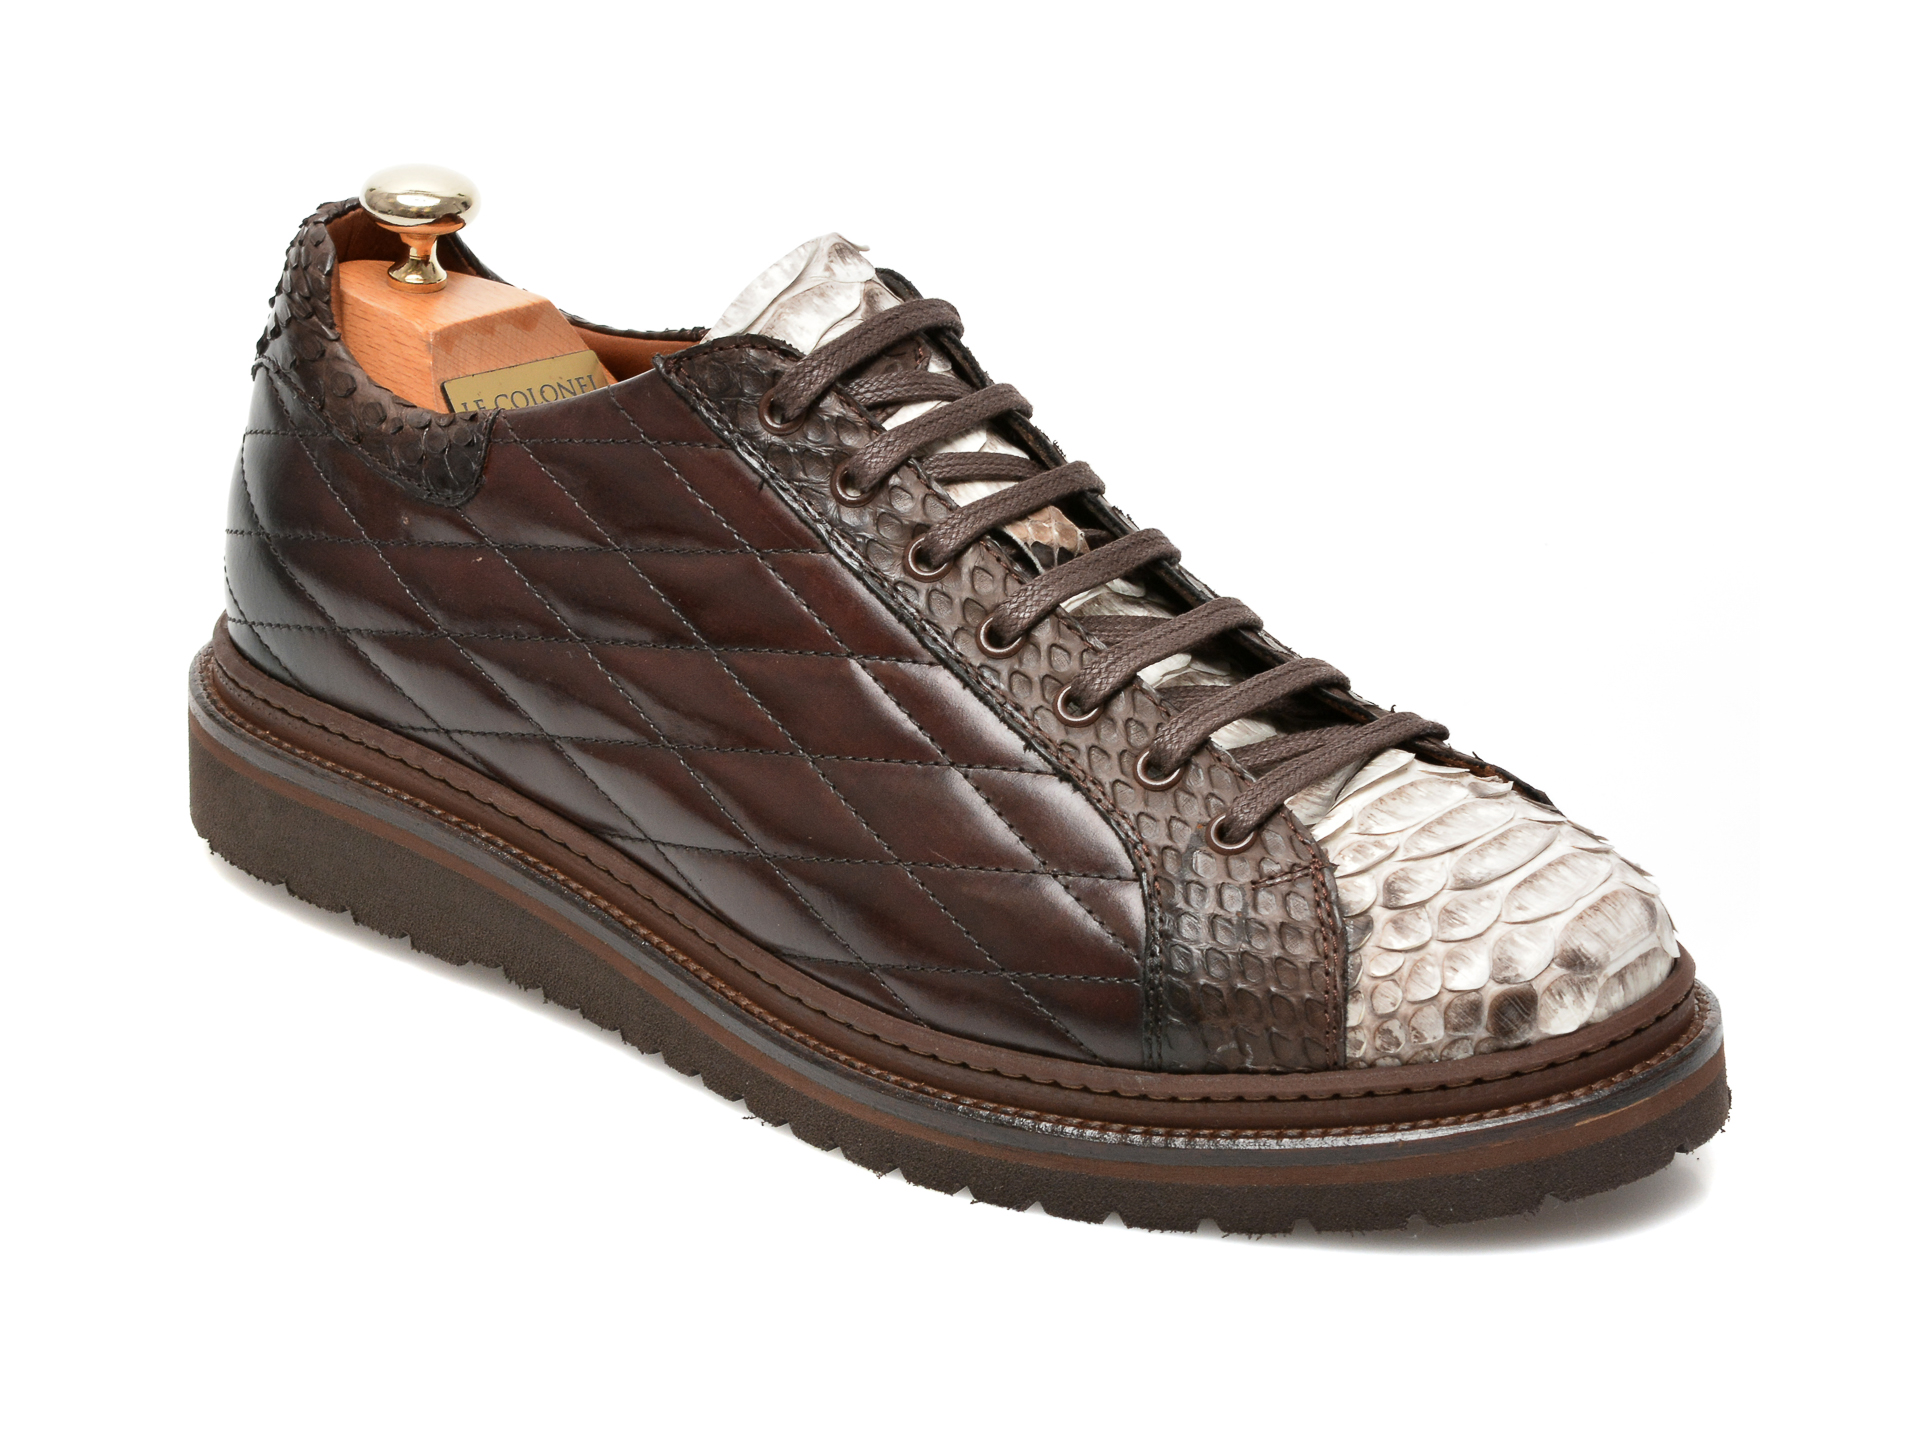 Pantofi LE COLONEL maro, 64802, din piele naturala